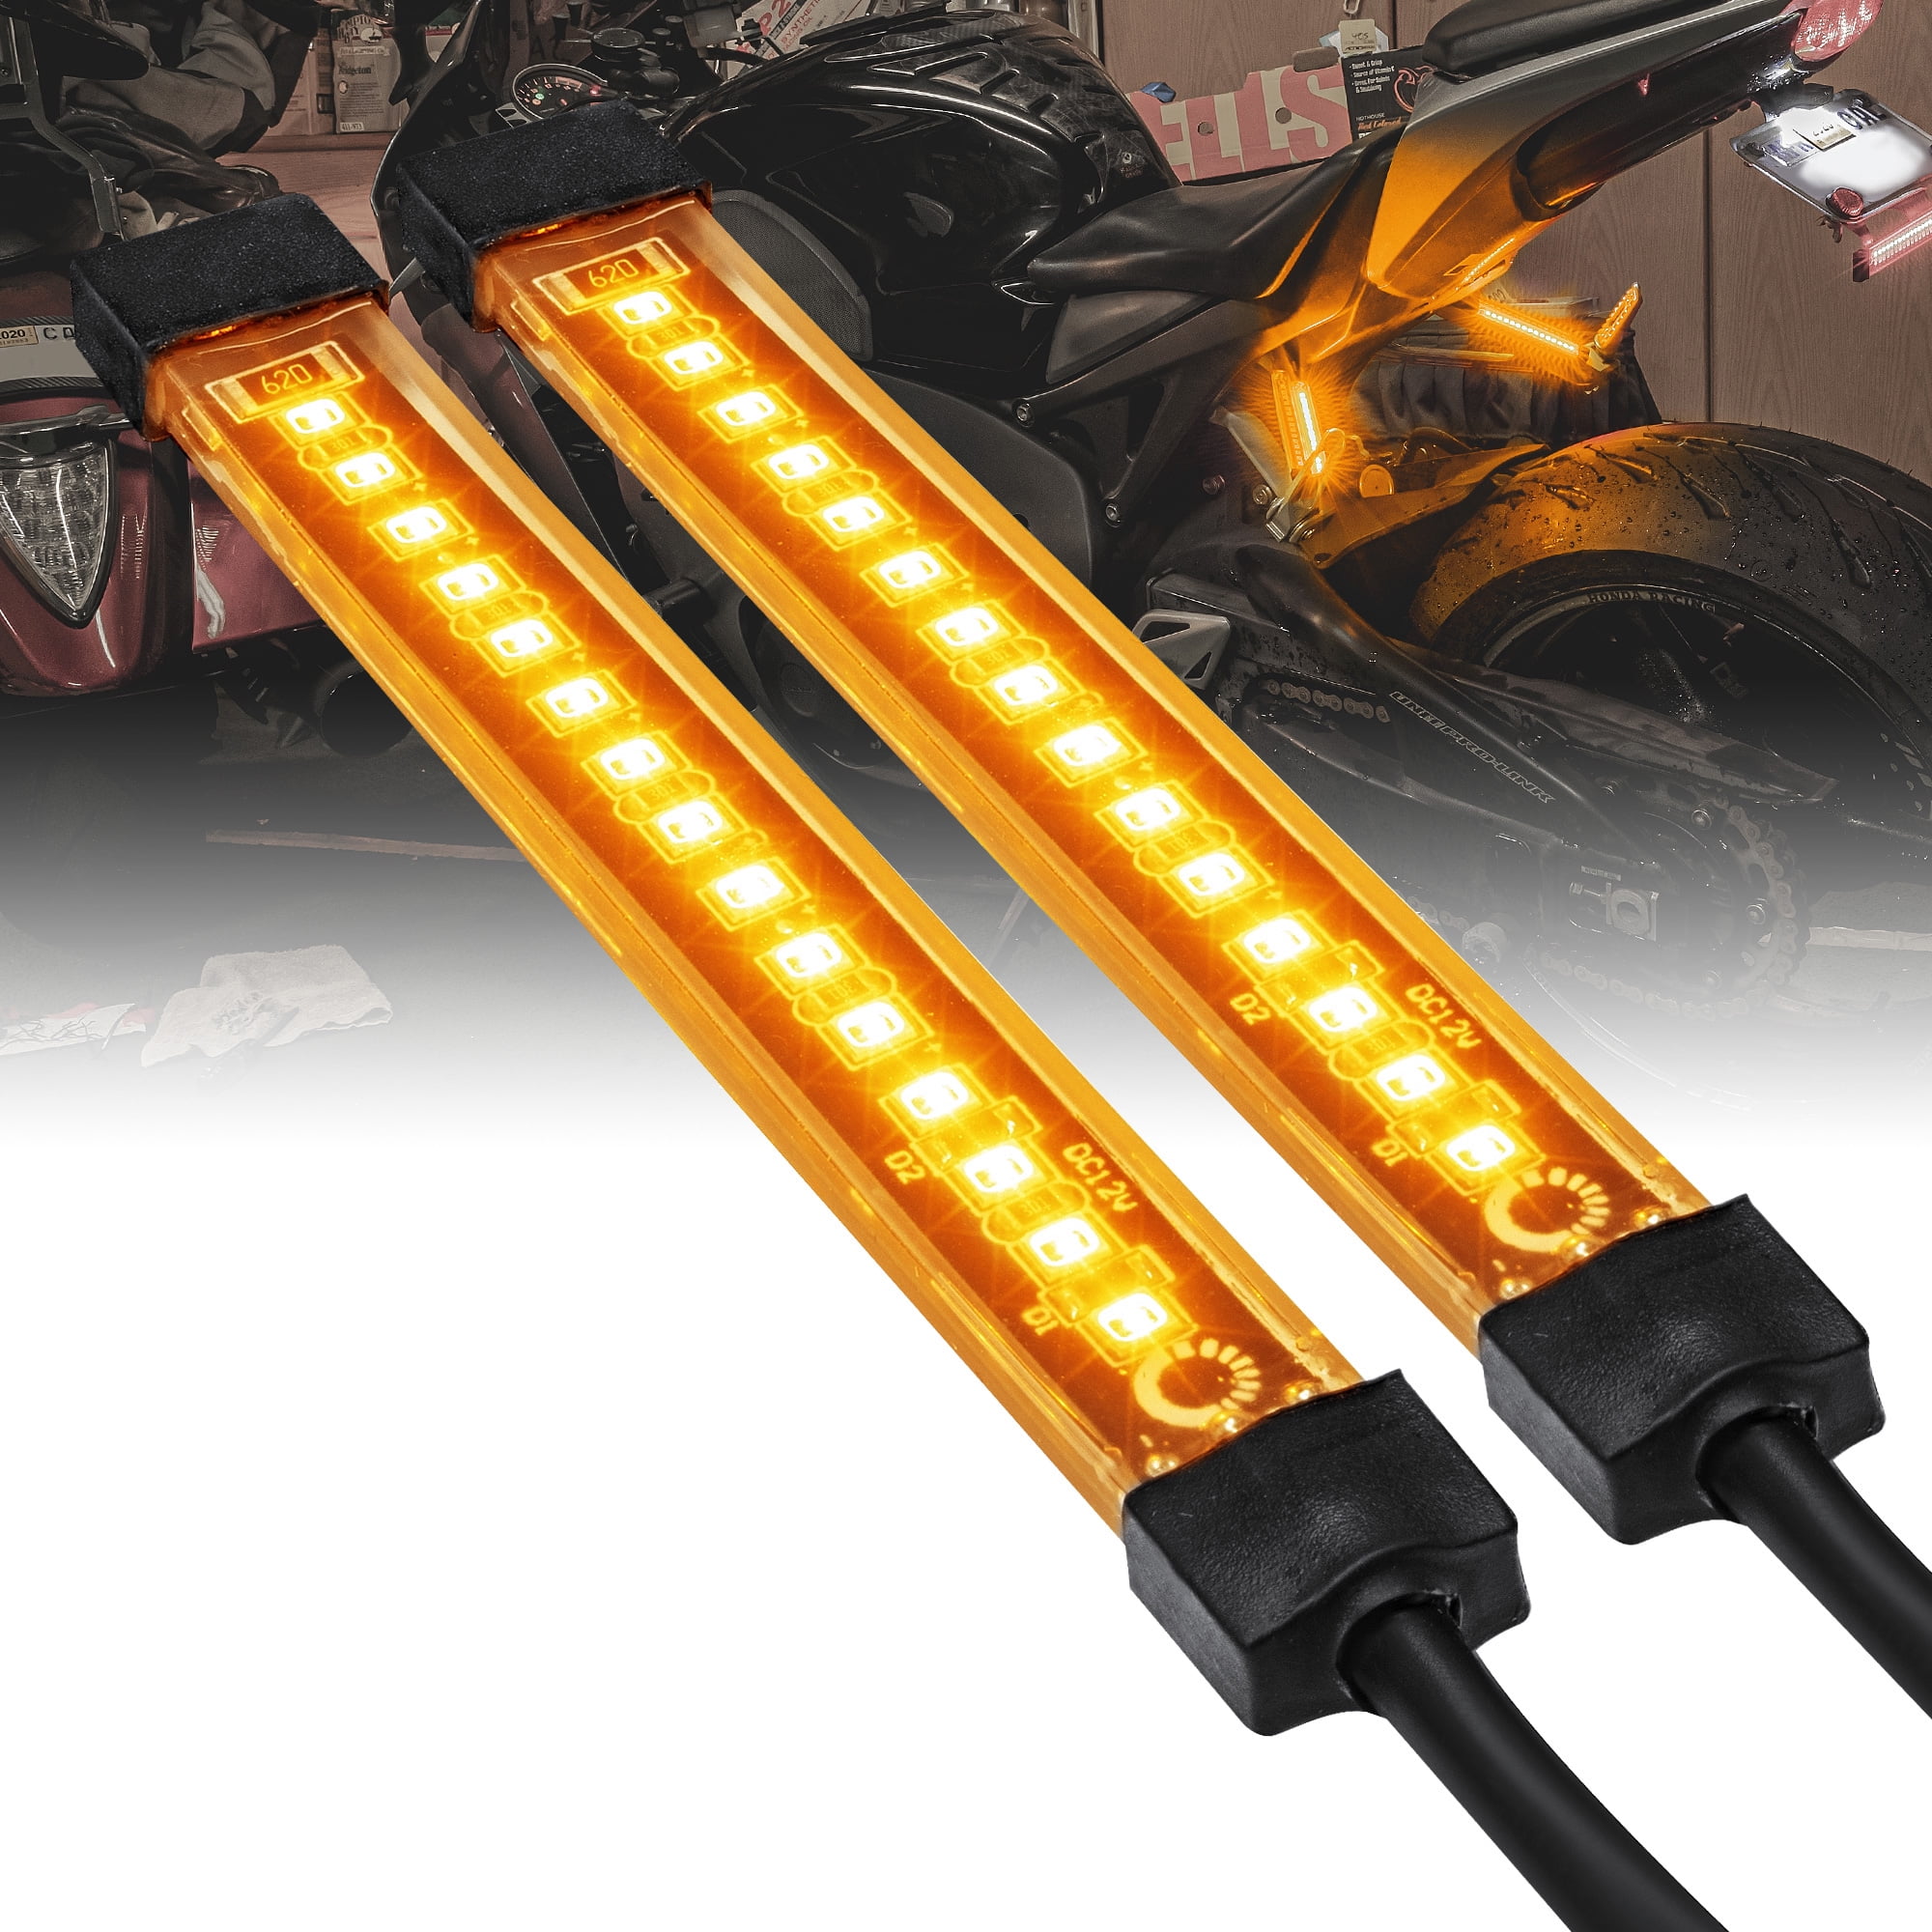 Kingshowstar 2X 10cm 24led PVC Strip Universal Motorcycle Bike Amber LED Turn Signal Indicator Blinker Light 12v 